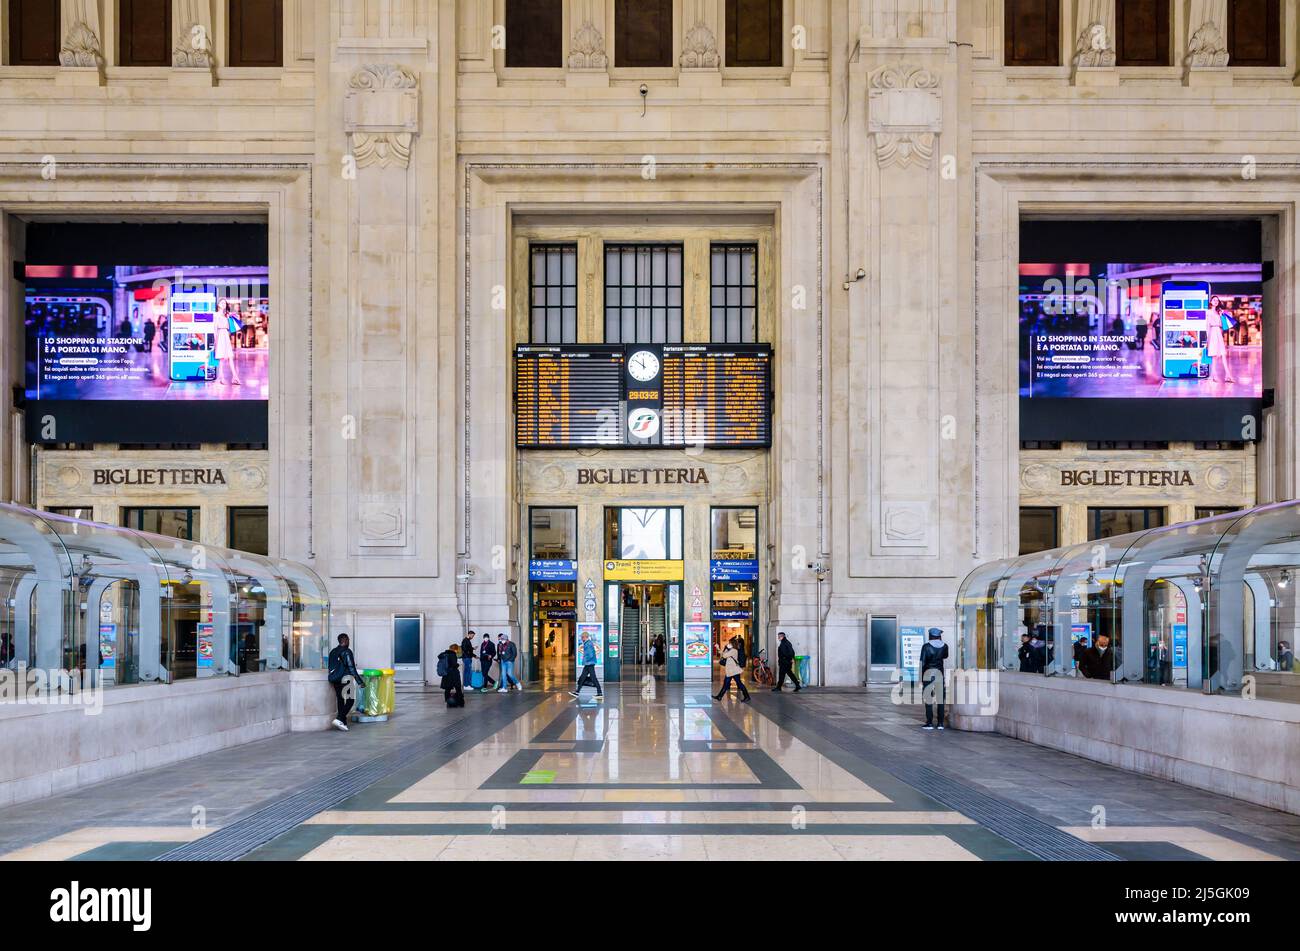 Les arrivées et les départs sont à bord de la monumentale Galleria delle Carrozze (galerie des voitures) de la gare centrale de Milan, en Italie. Banque D'Images